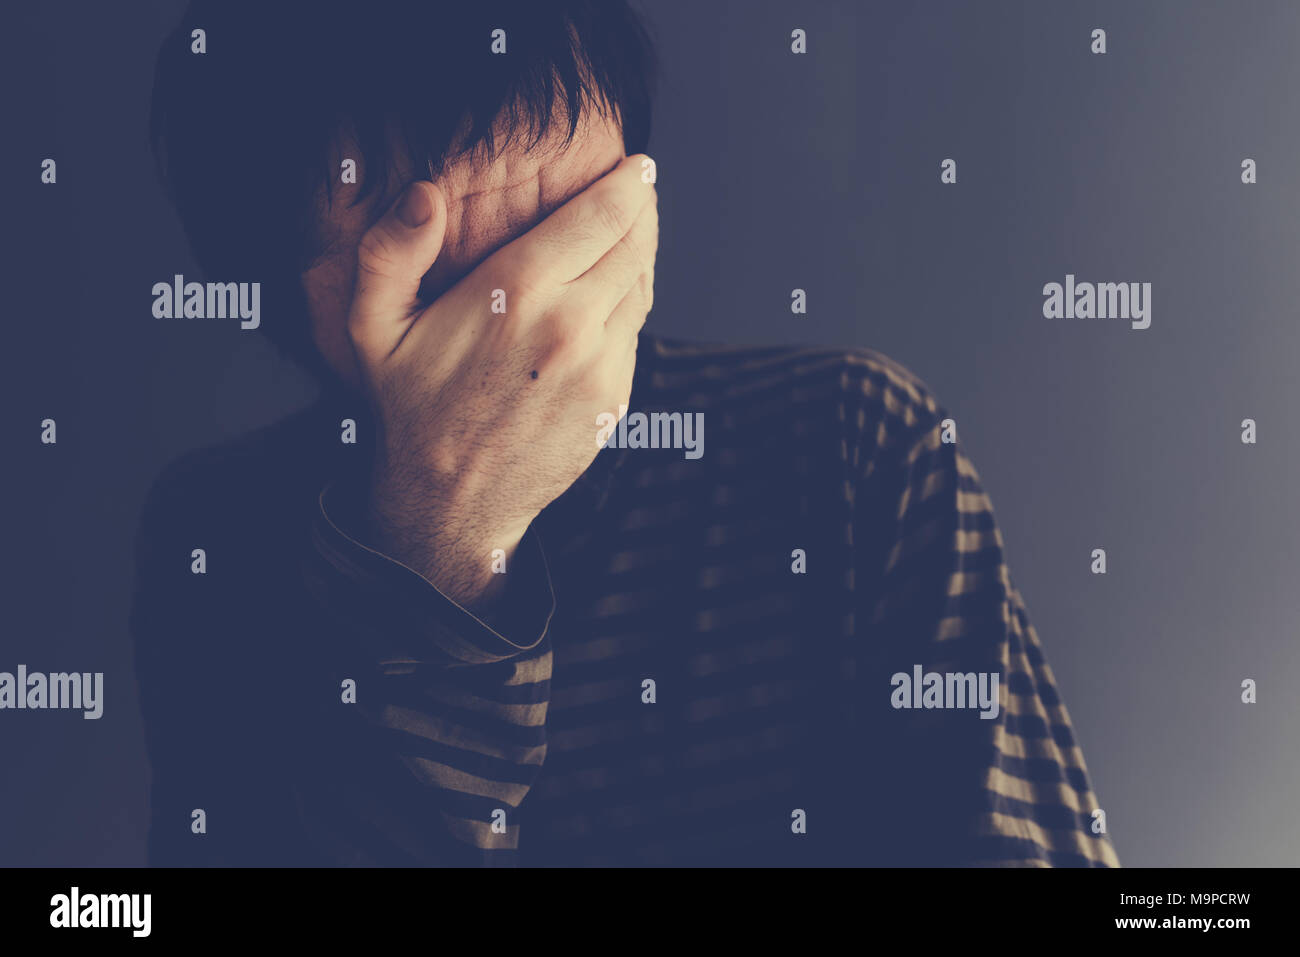 Homme pleurer seul, avec portrait low key selective focus Banque D'Images